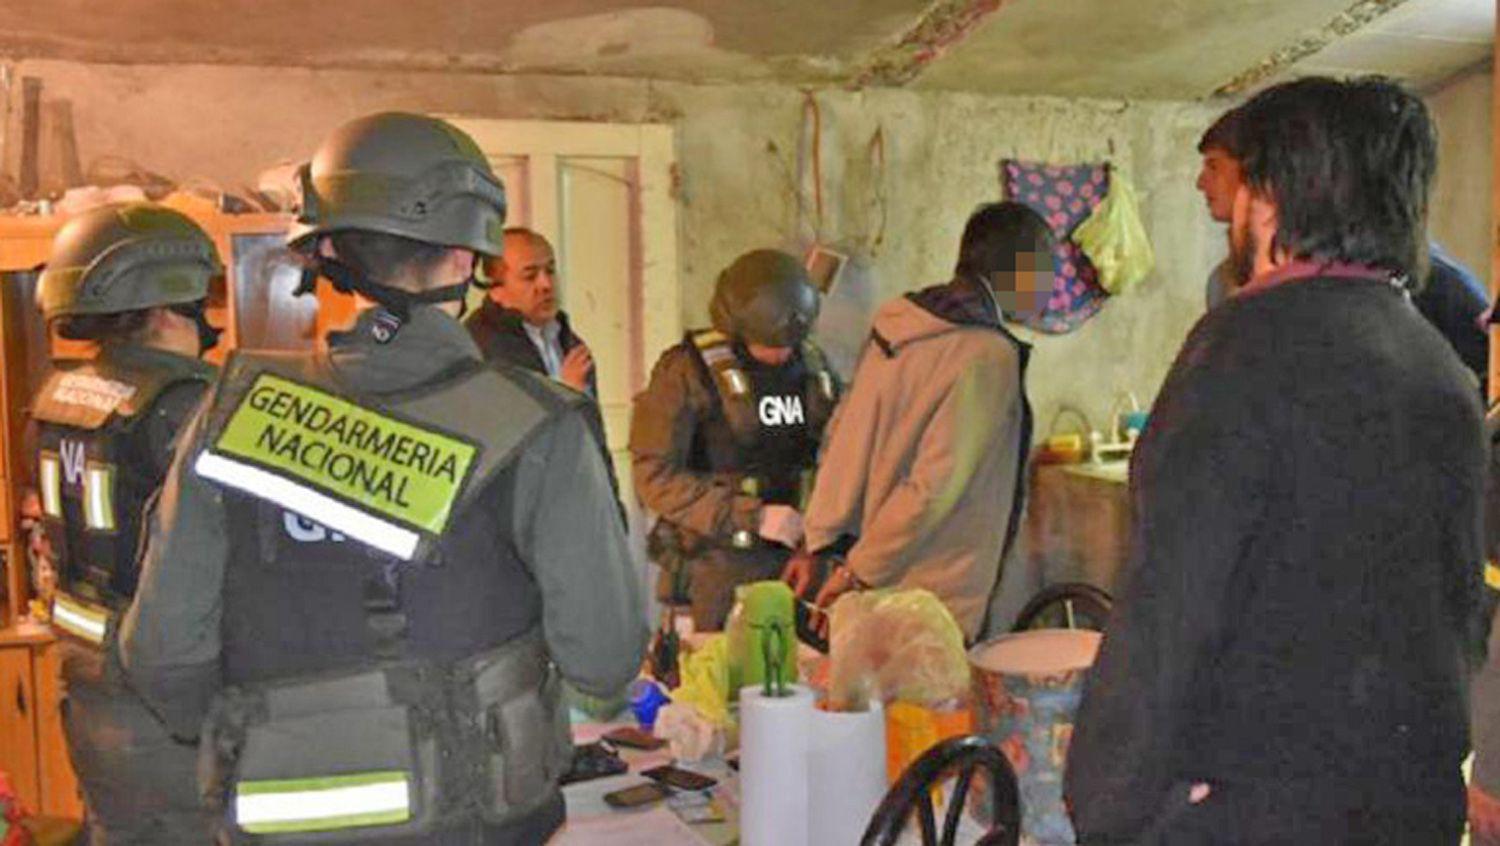 Pericia clave de voz define suerte del ldquoCura Lastrardquo en banda narco ldquonutridardquo con droga de Paraguay